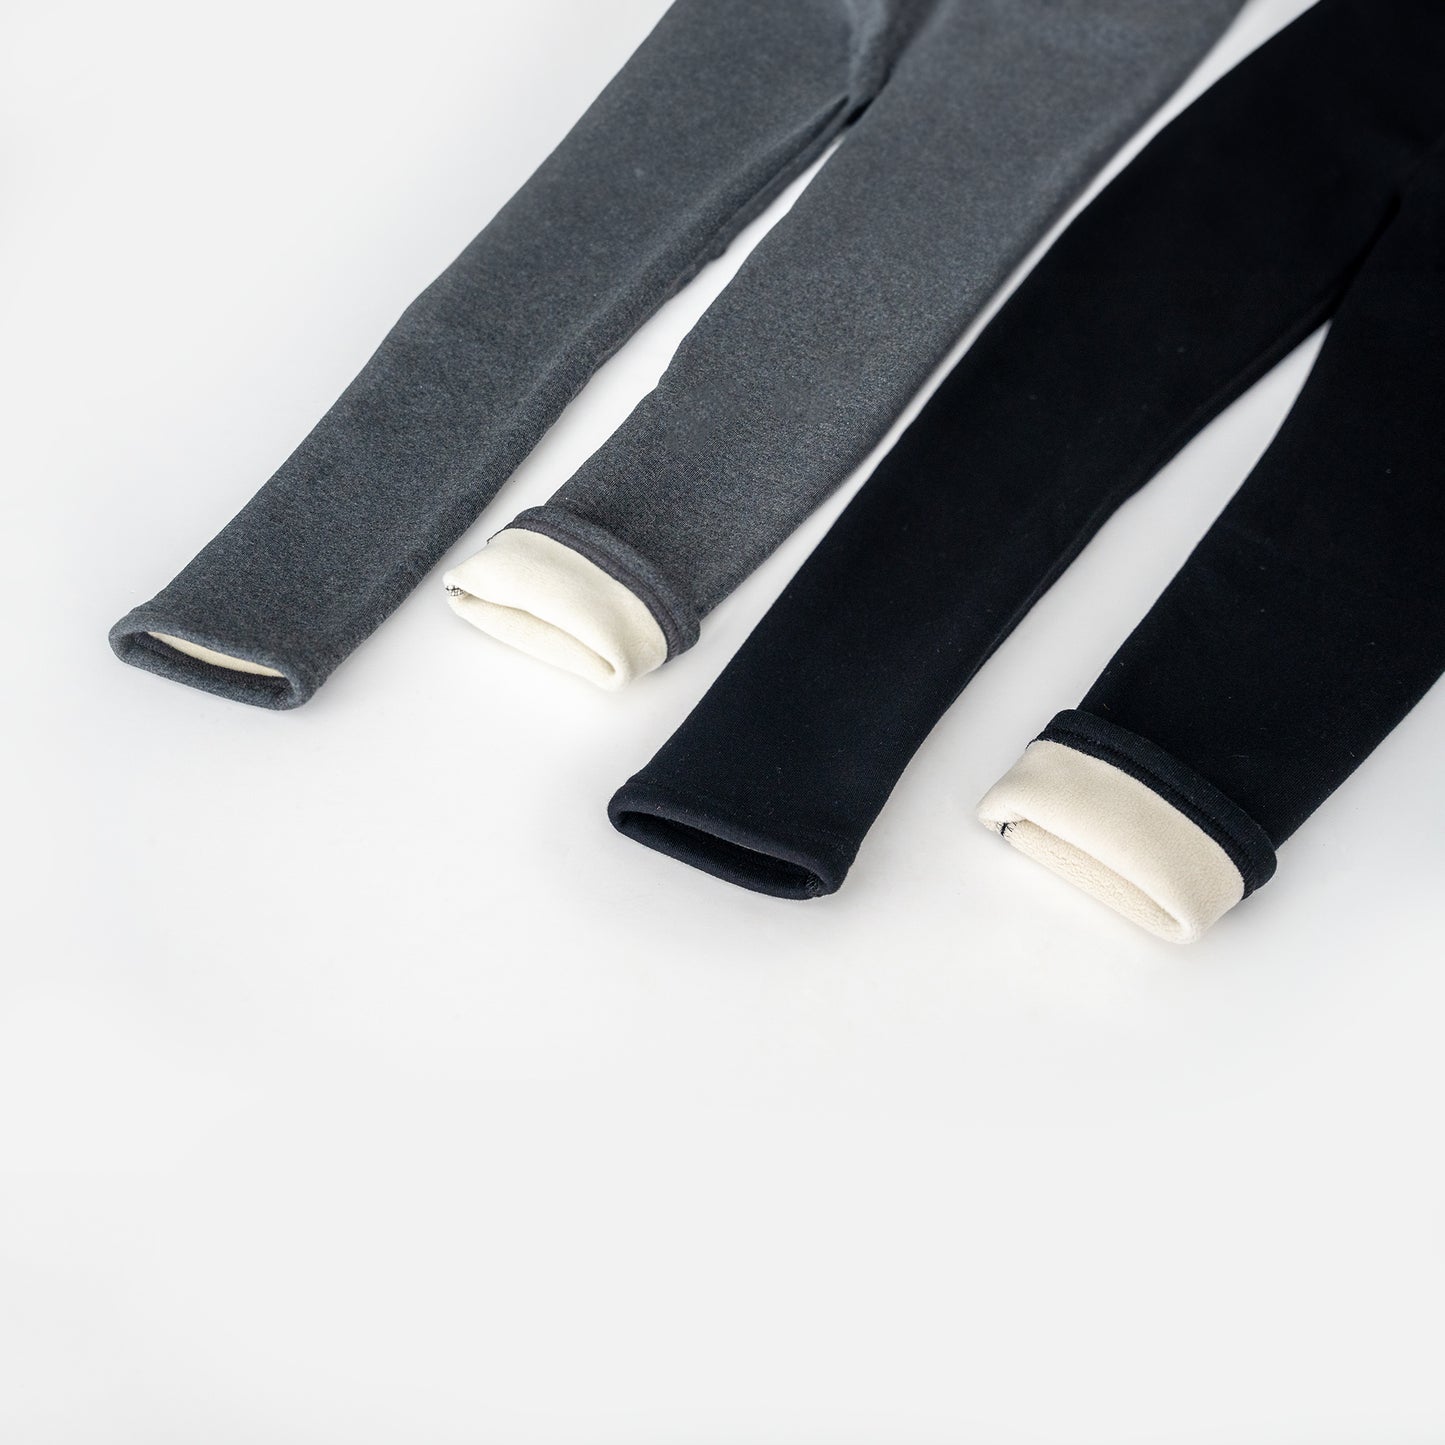 Grey Kids' Thermal Fur-Lined School Uniform Leggings - Nora